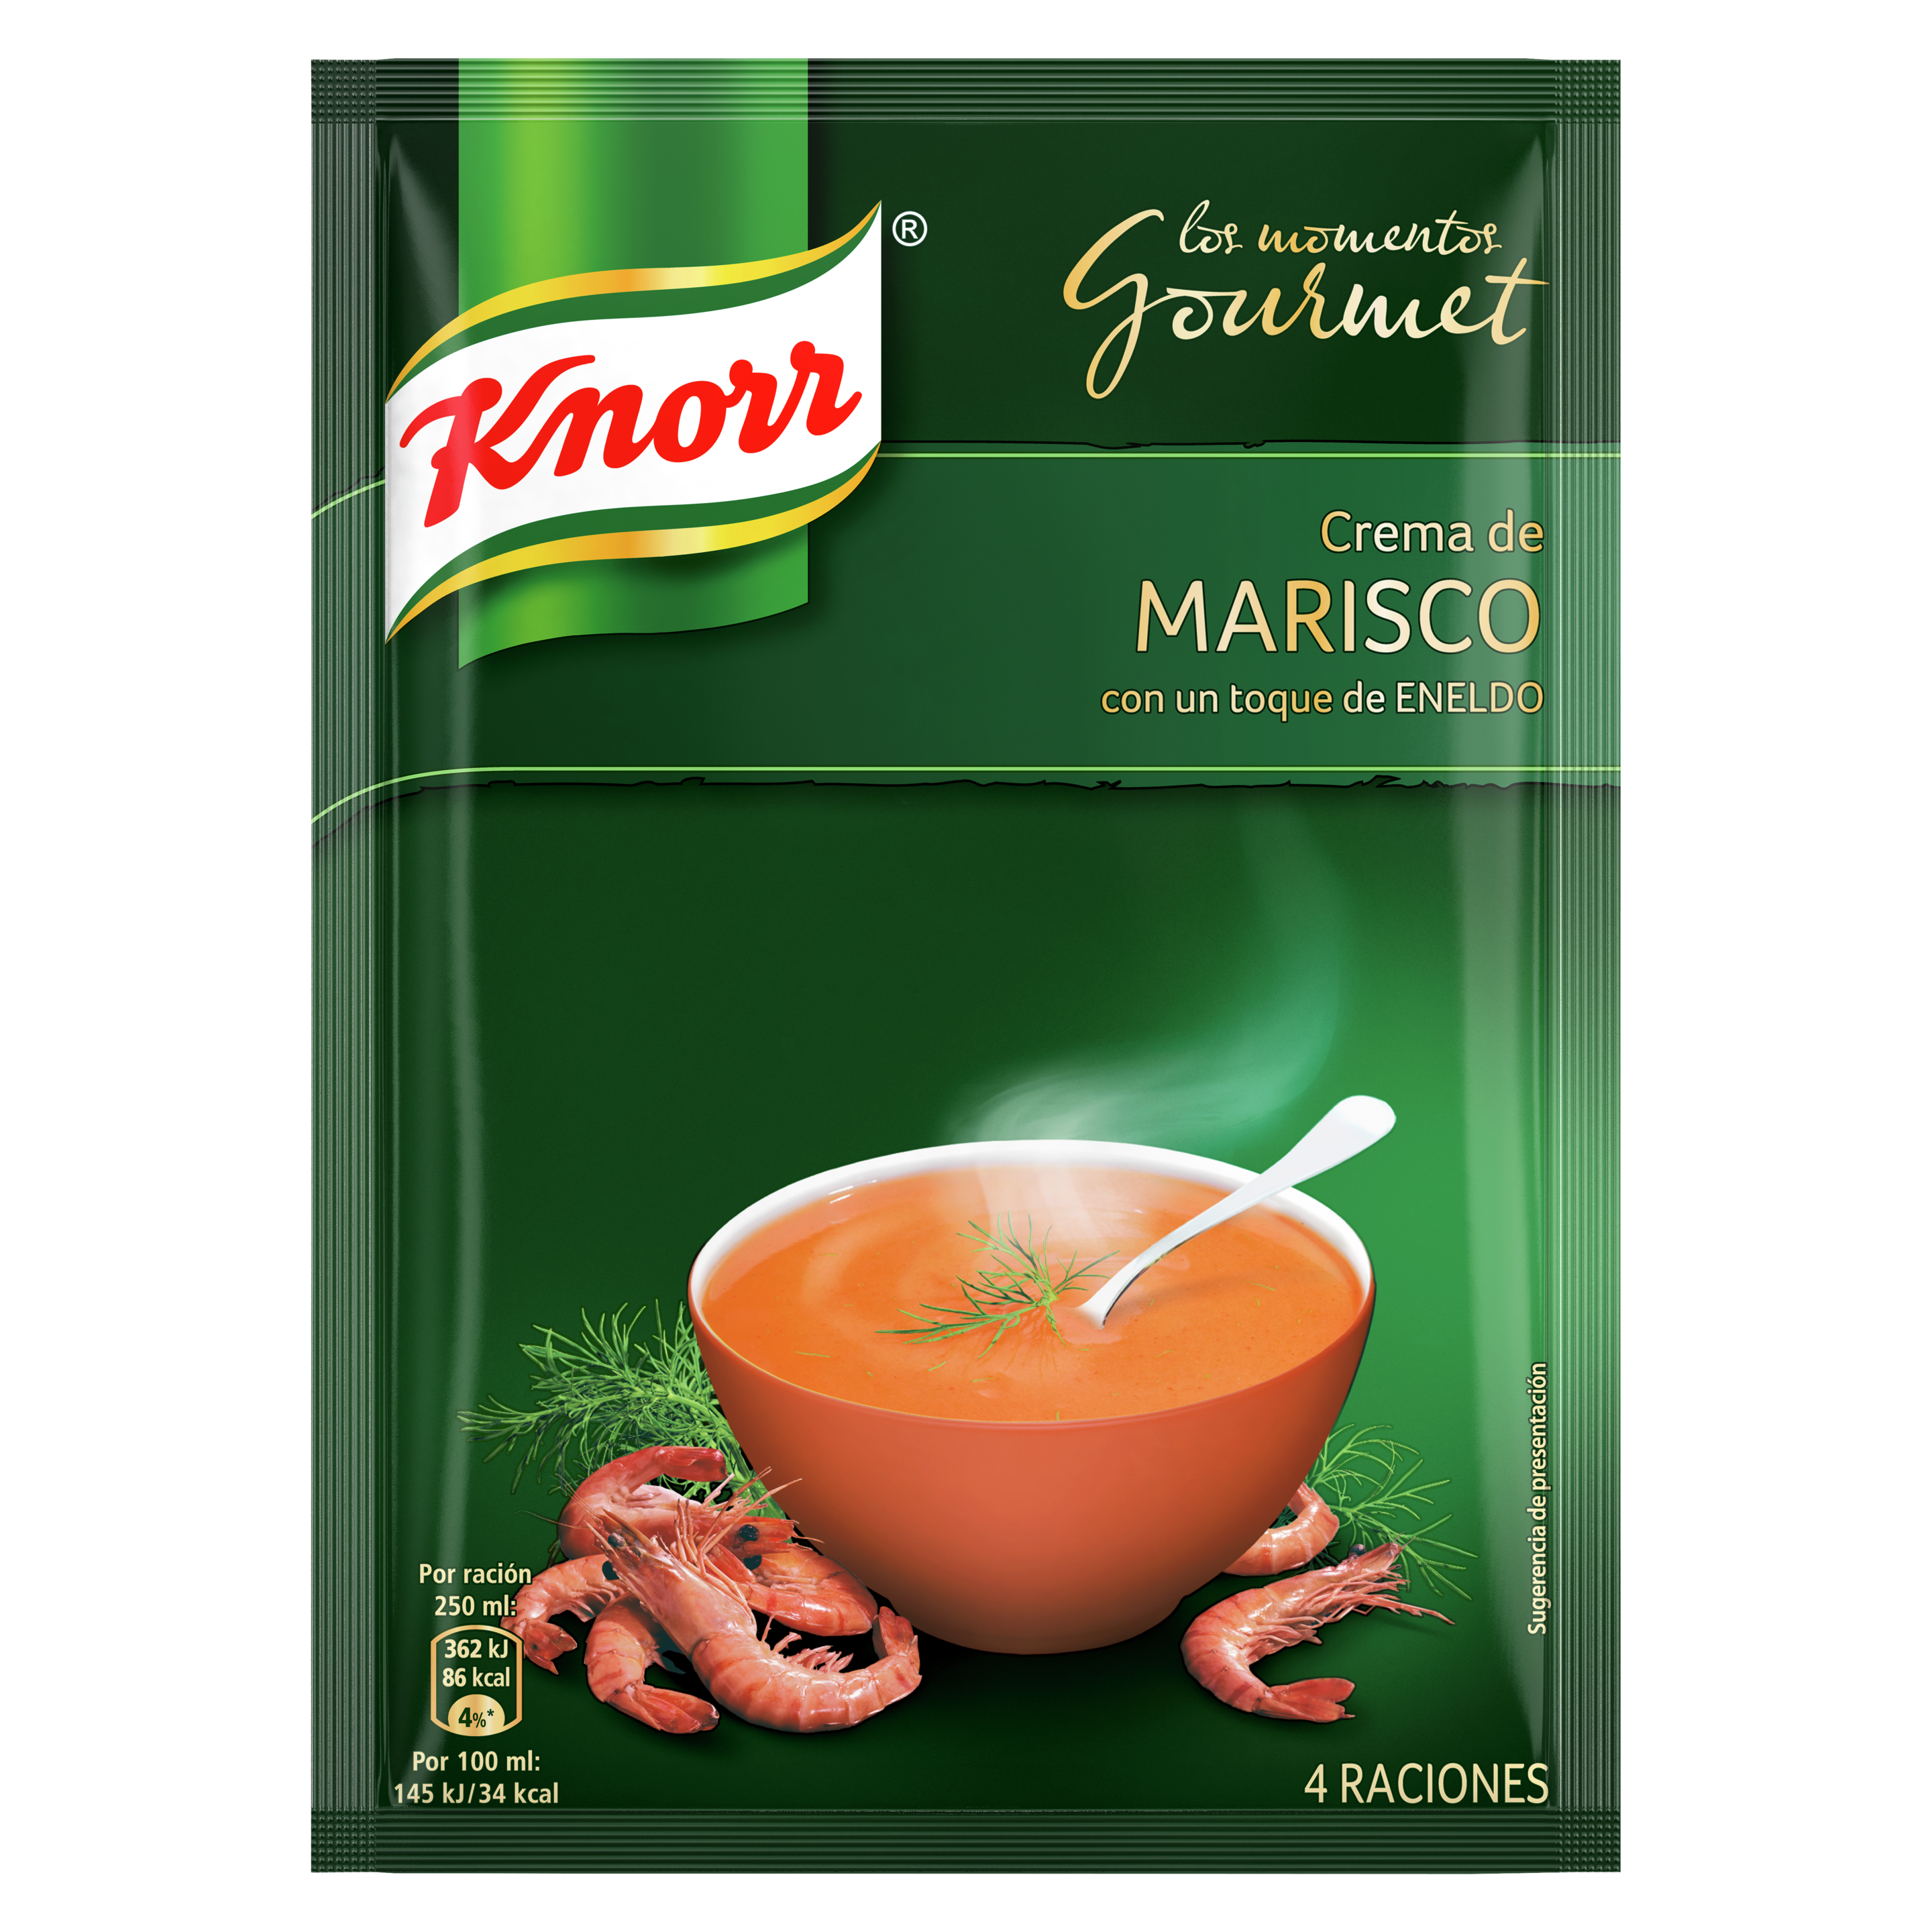 Crema Gourmet de Marisco y Eneldo 63g